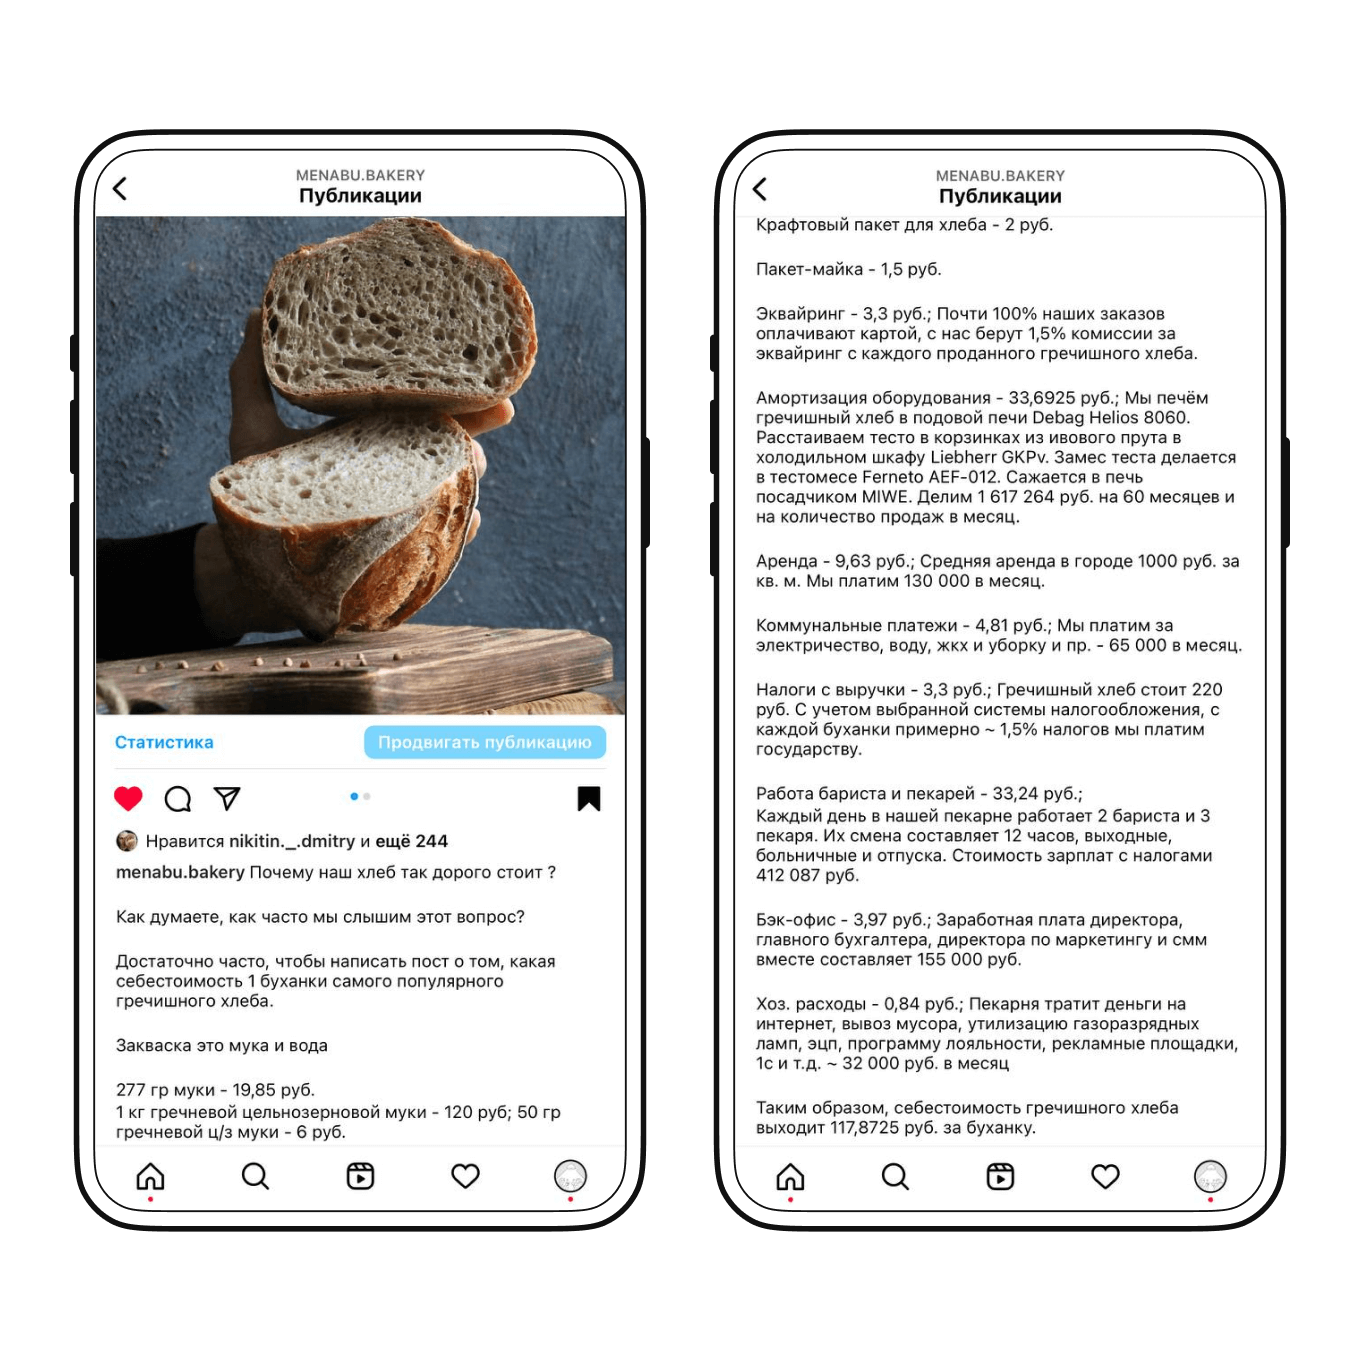 Пост в социальной сети с расчетом себестоимости хлеба